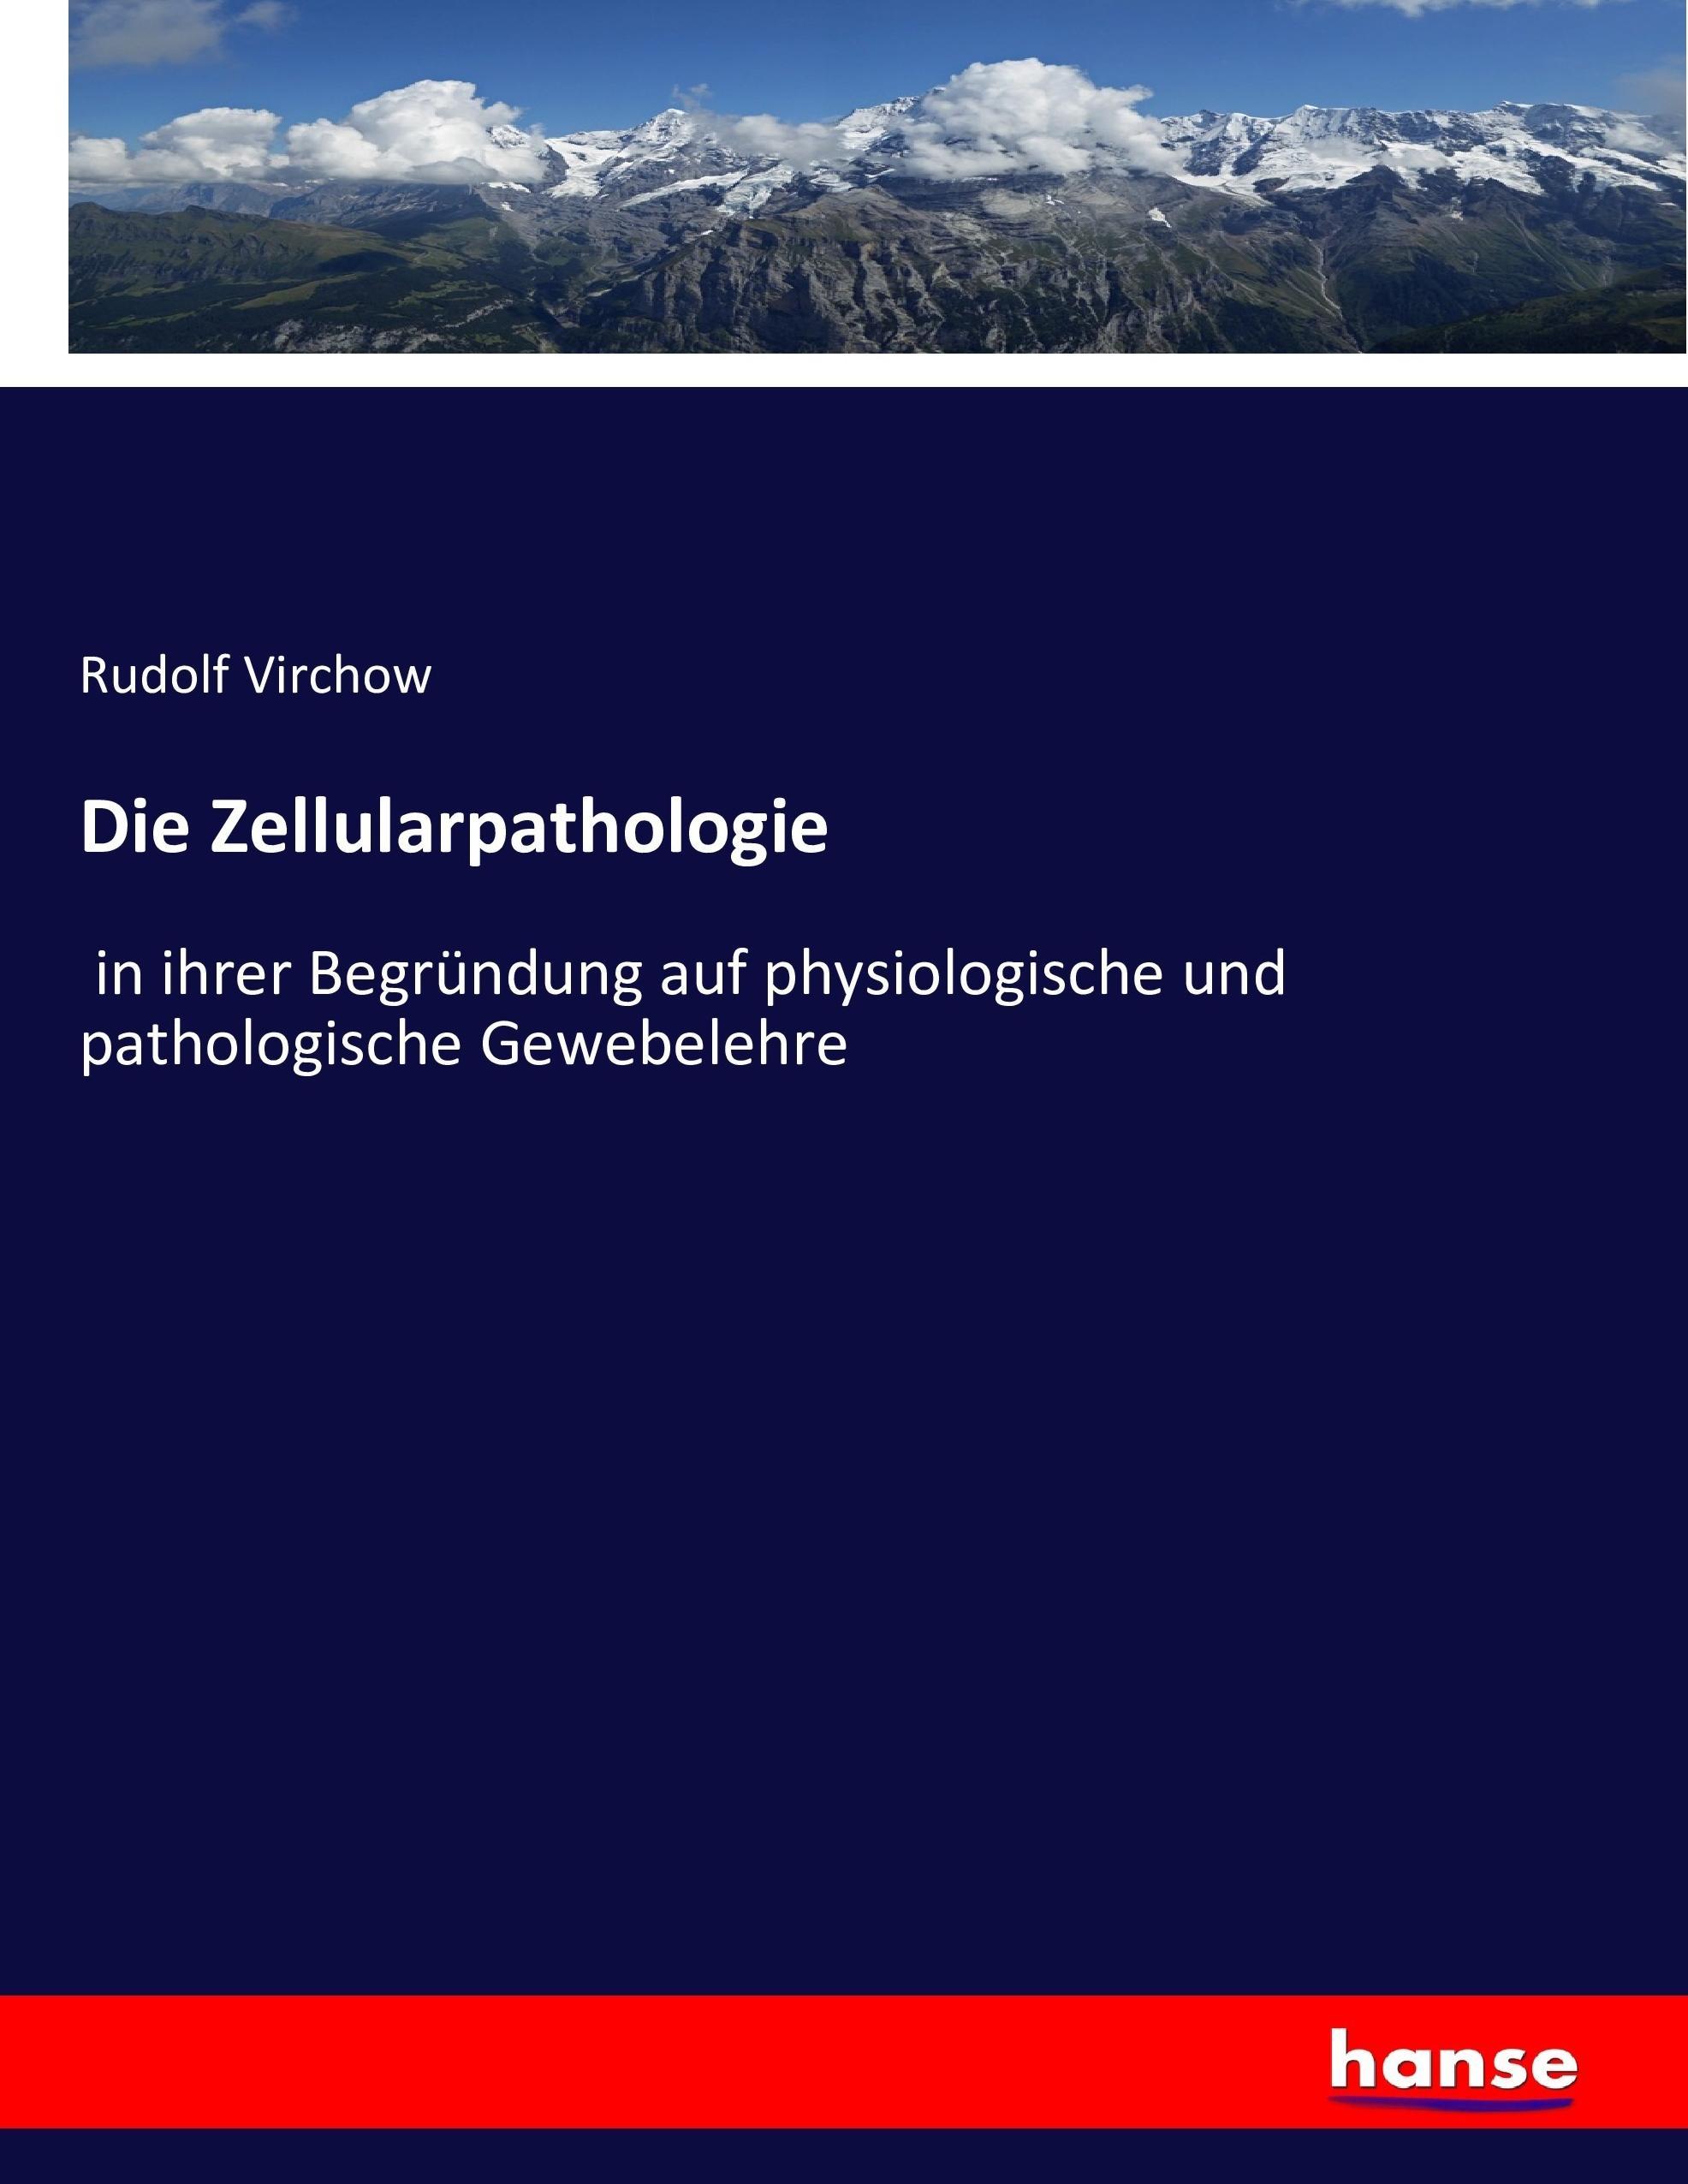 Die Zellularpathologie / in ihrer Begründung auf physiologische und pathologische Gewebelehre / Rudolf Virchow / Taschenbuch / Paperback / 604 S. / Deutsch / 2016 / hansebooks / EAN 9783743436909 - Virchow, Rudolf